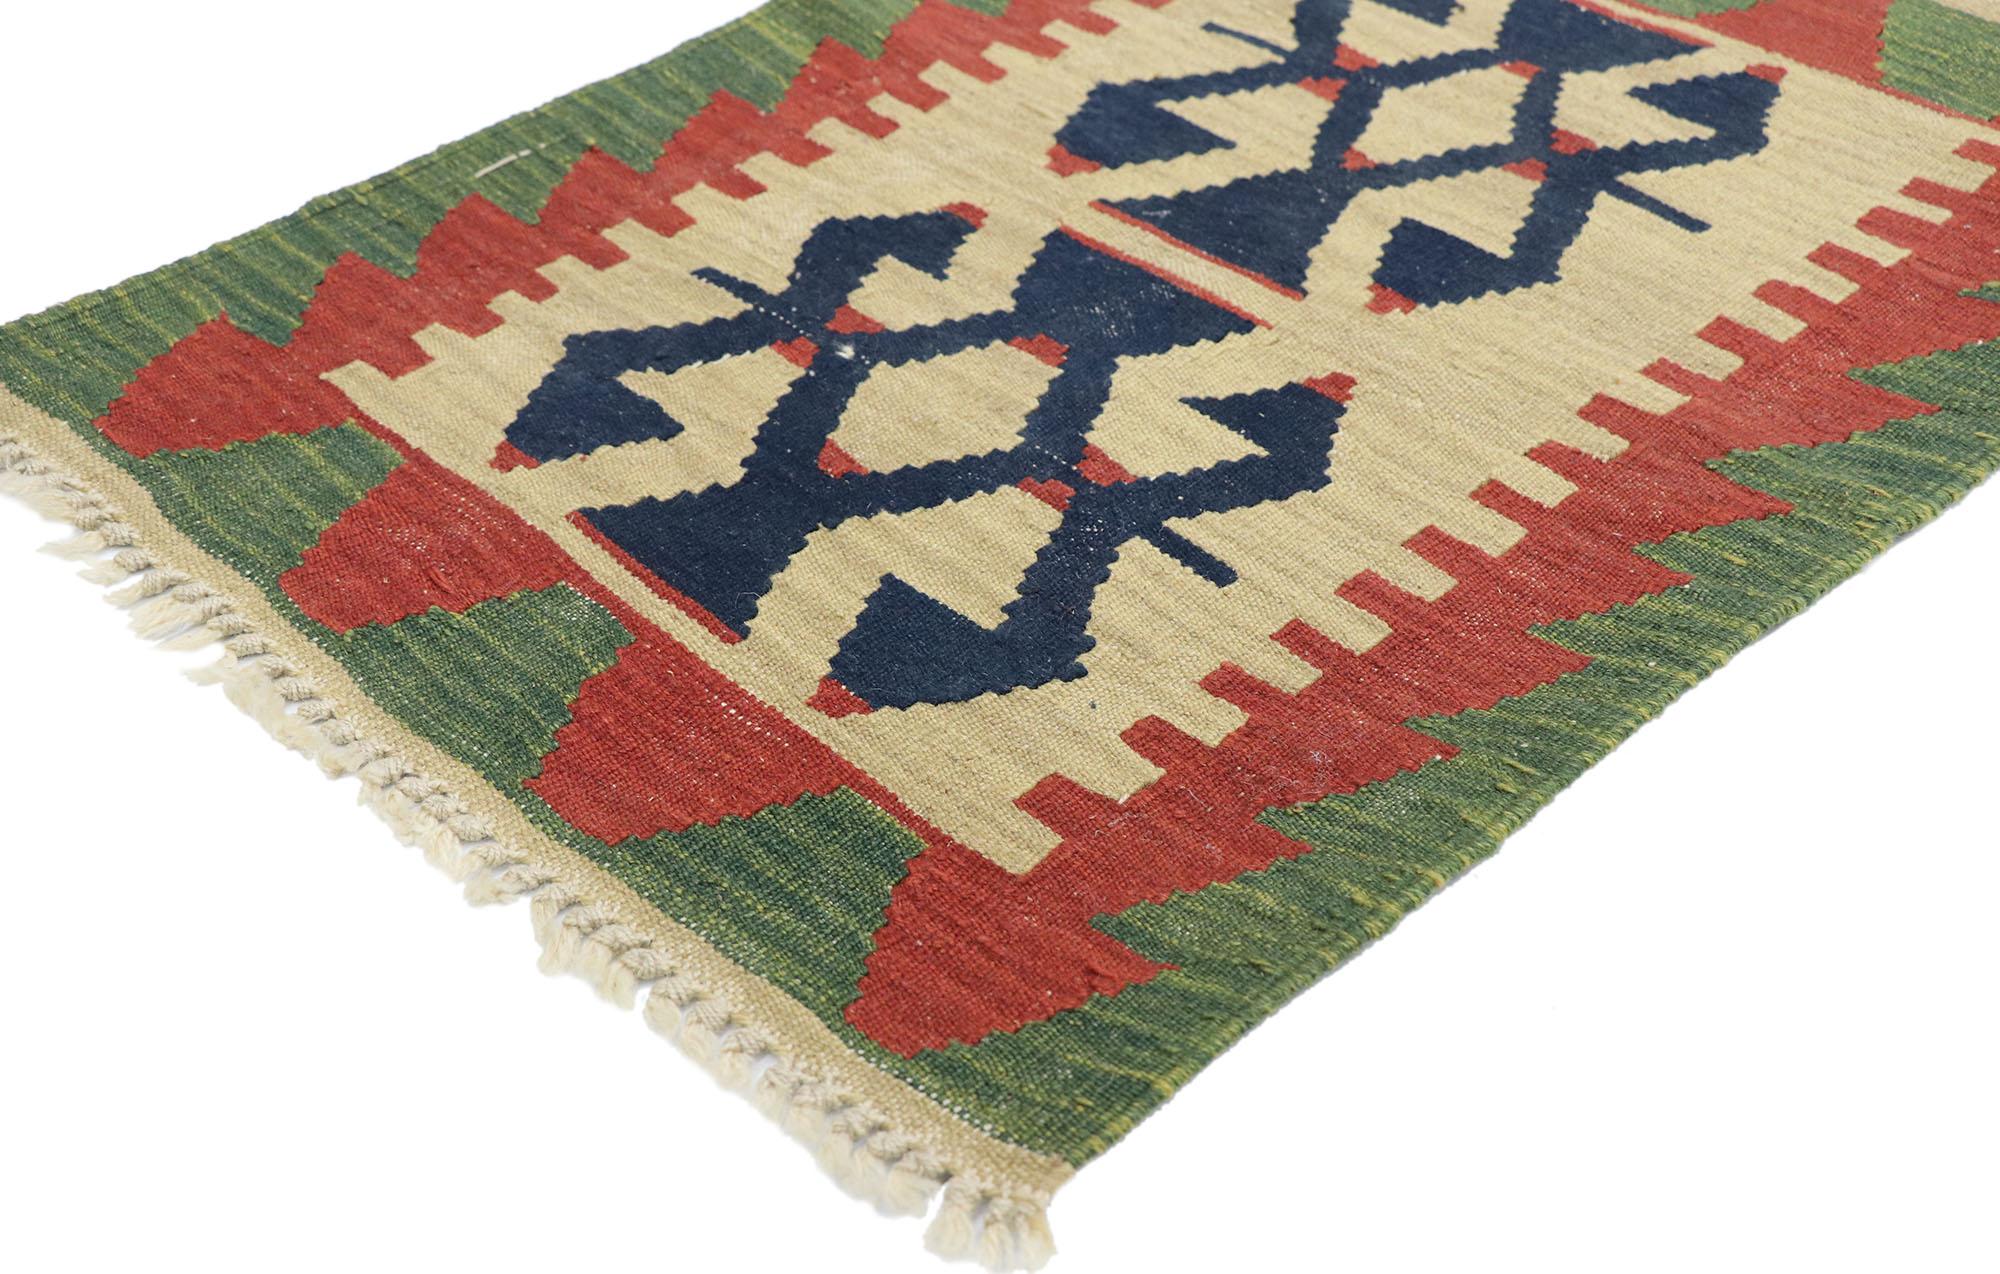 77907, alter persischer Shiraz-Kilim-Teppich mit Tribal-Stil. Voller winziger Details und einem kühnen, ausdrucksstarken Design, kombiniert mit leuchtenden Farben und Tribal-Stil, ist dieser handgewebte persische Shiraz-Kilim-Teppich aus Wolle im